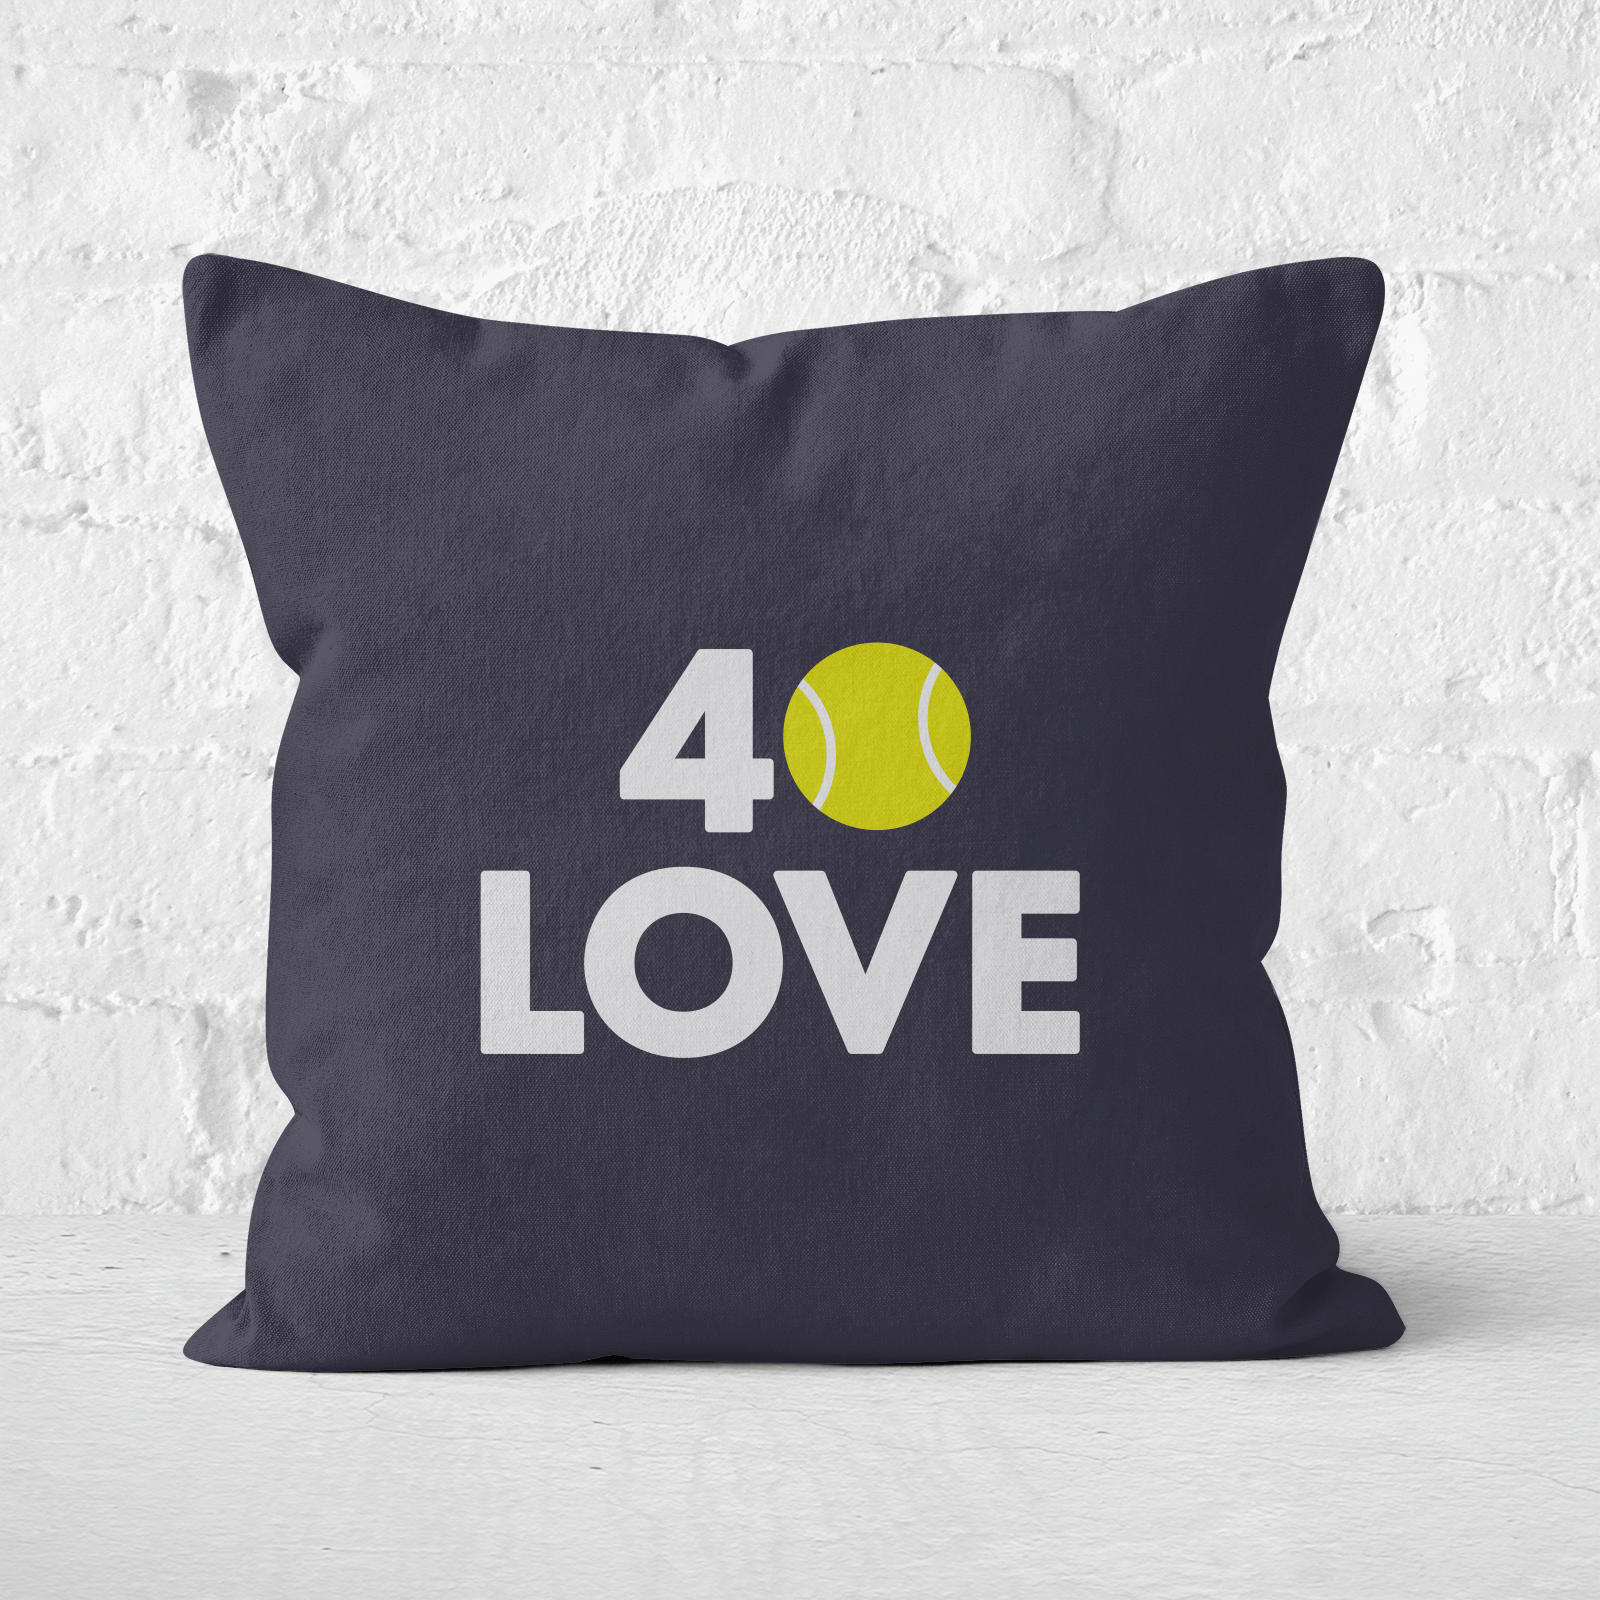 40 Love Square Cushion   50x50cm   Soft Touch